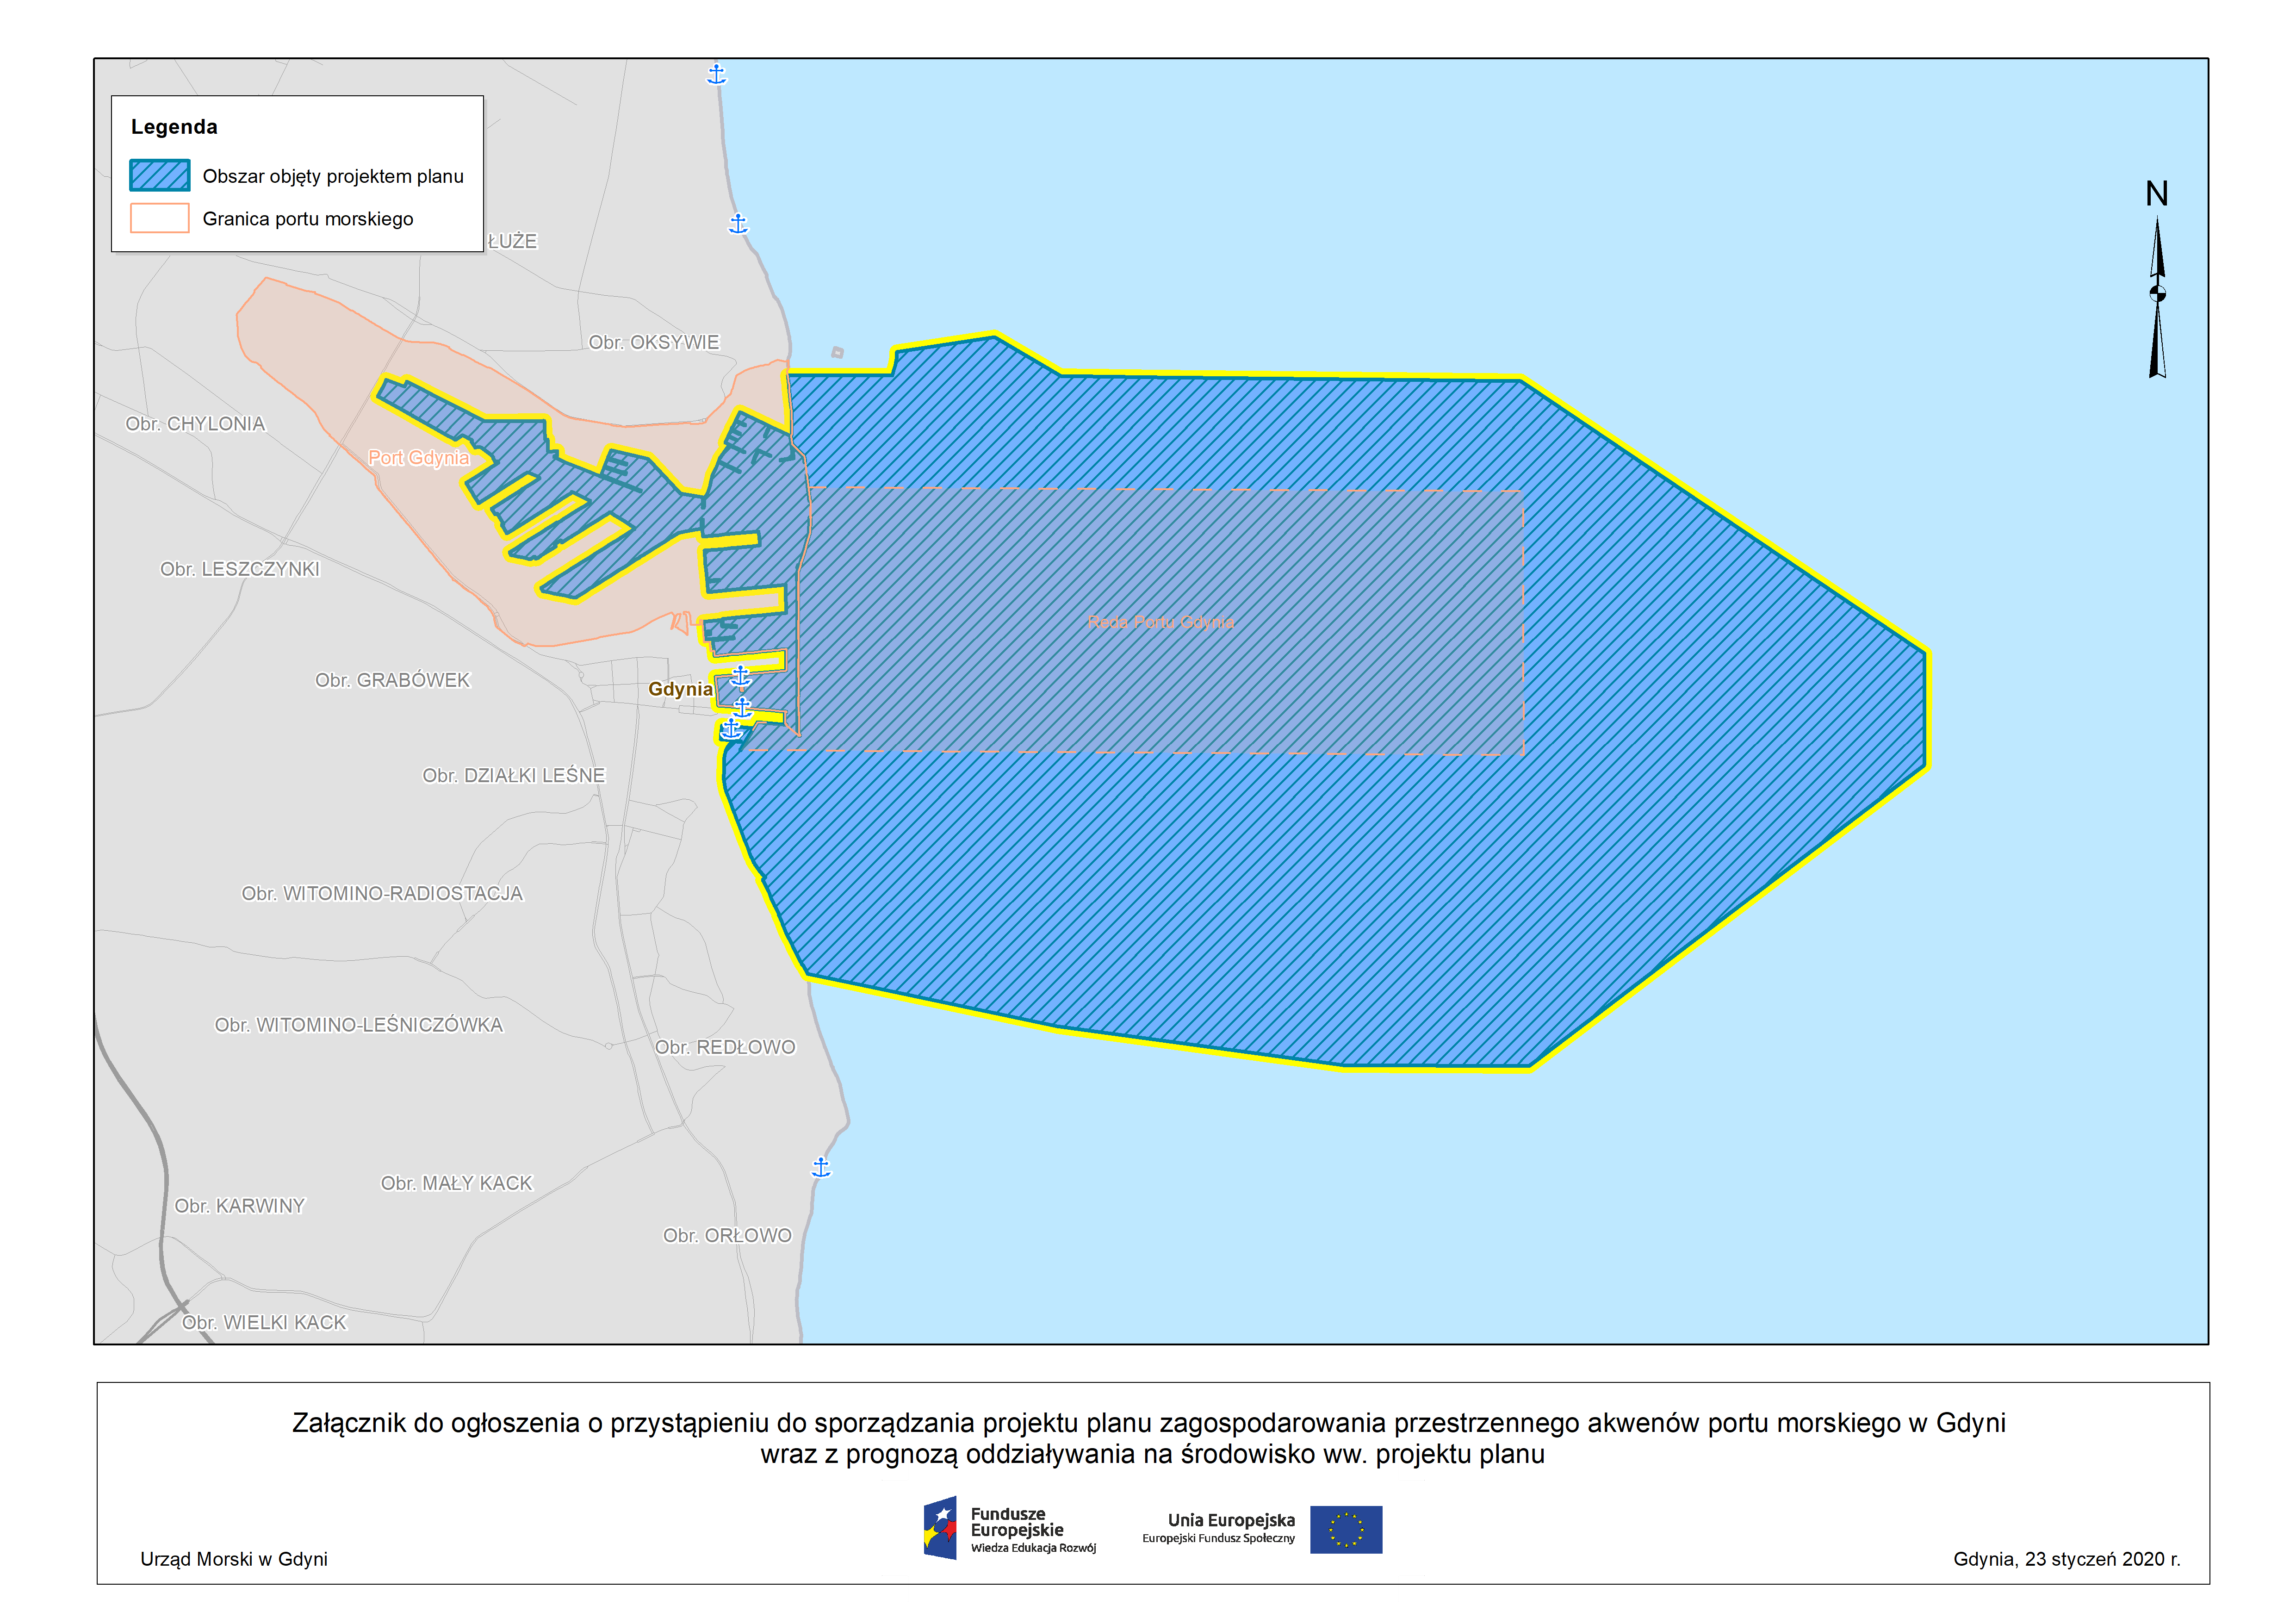 Ogłoszenie o przystąpieniu do sporządzania projektu planu zagospodarowania przestrzennego akwenów portu morskiego w Gdyni